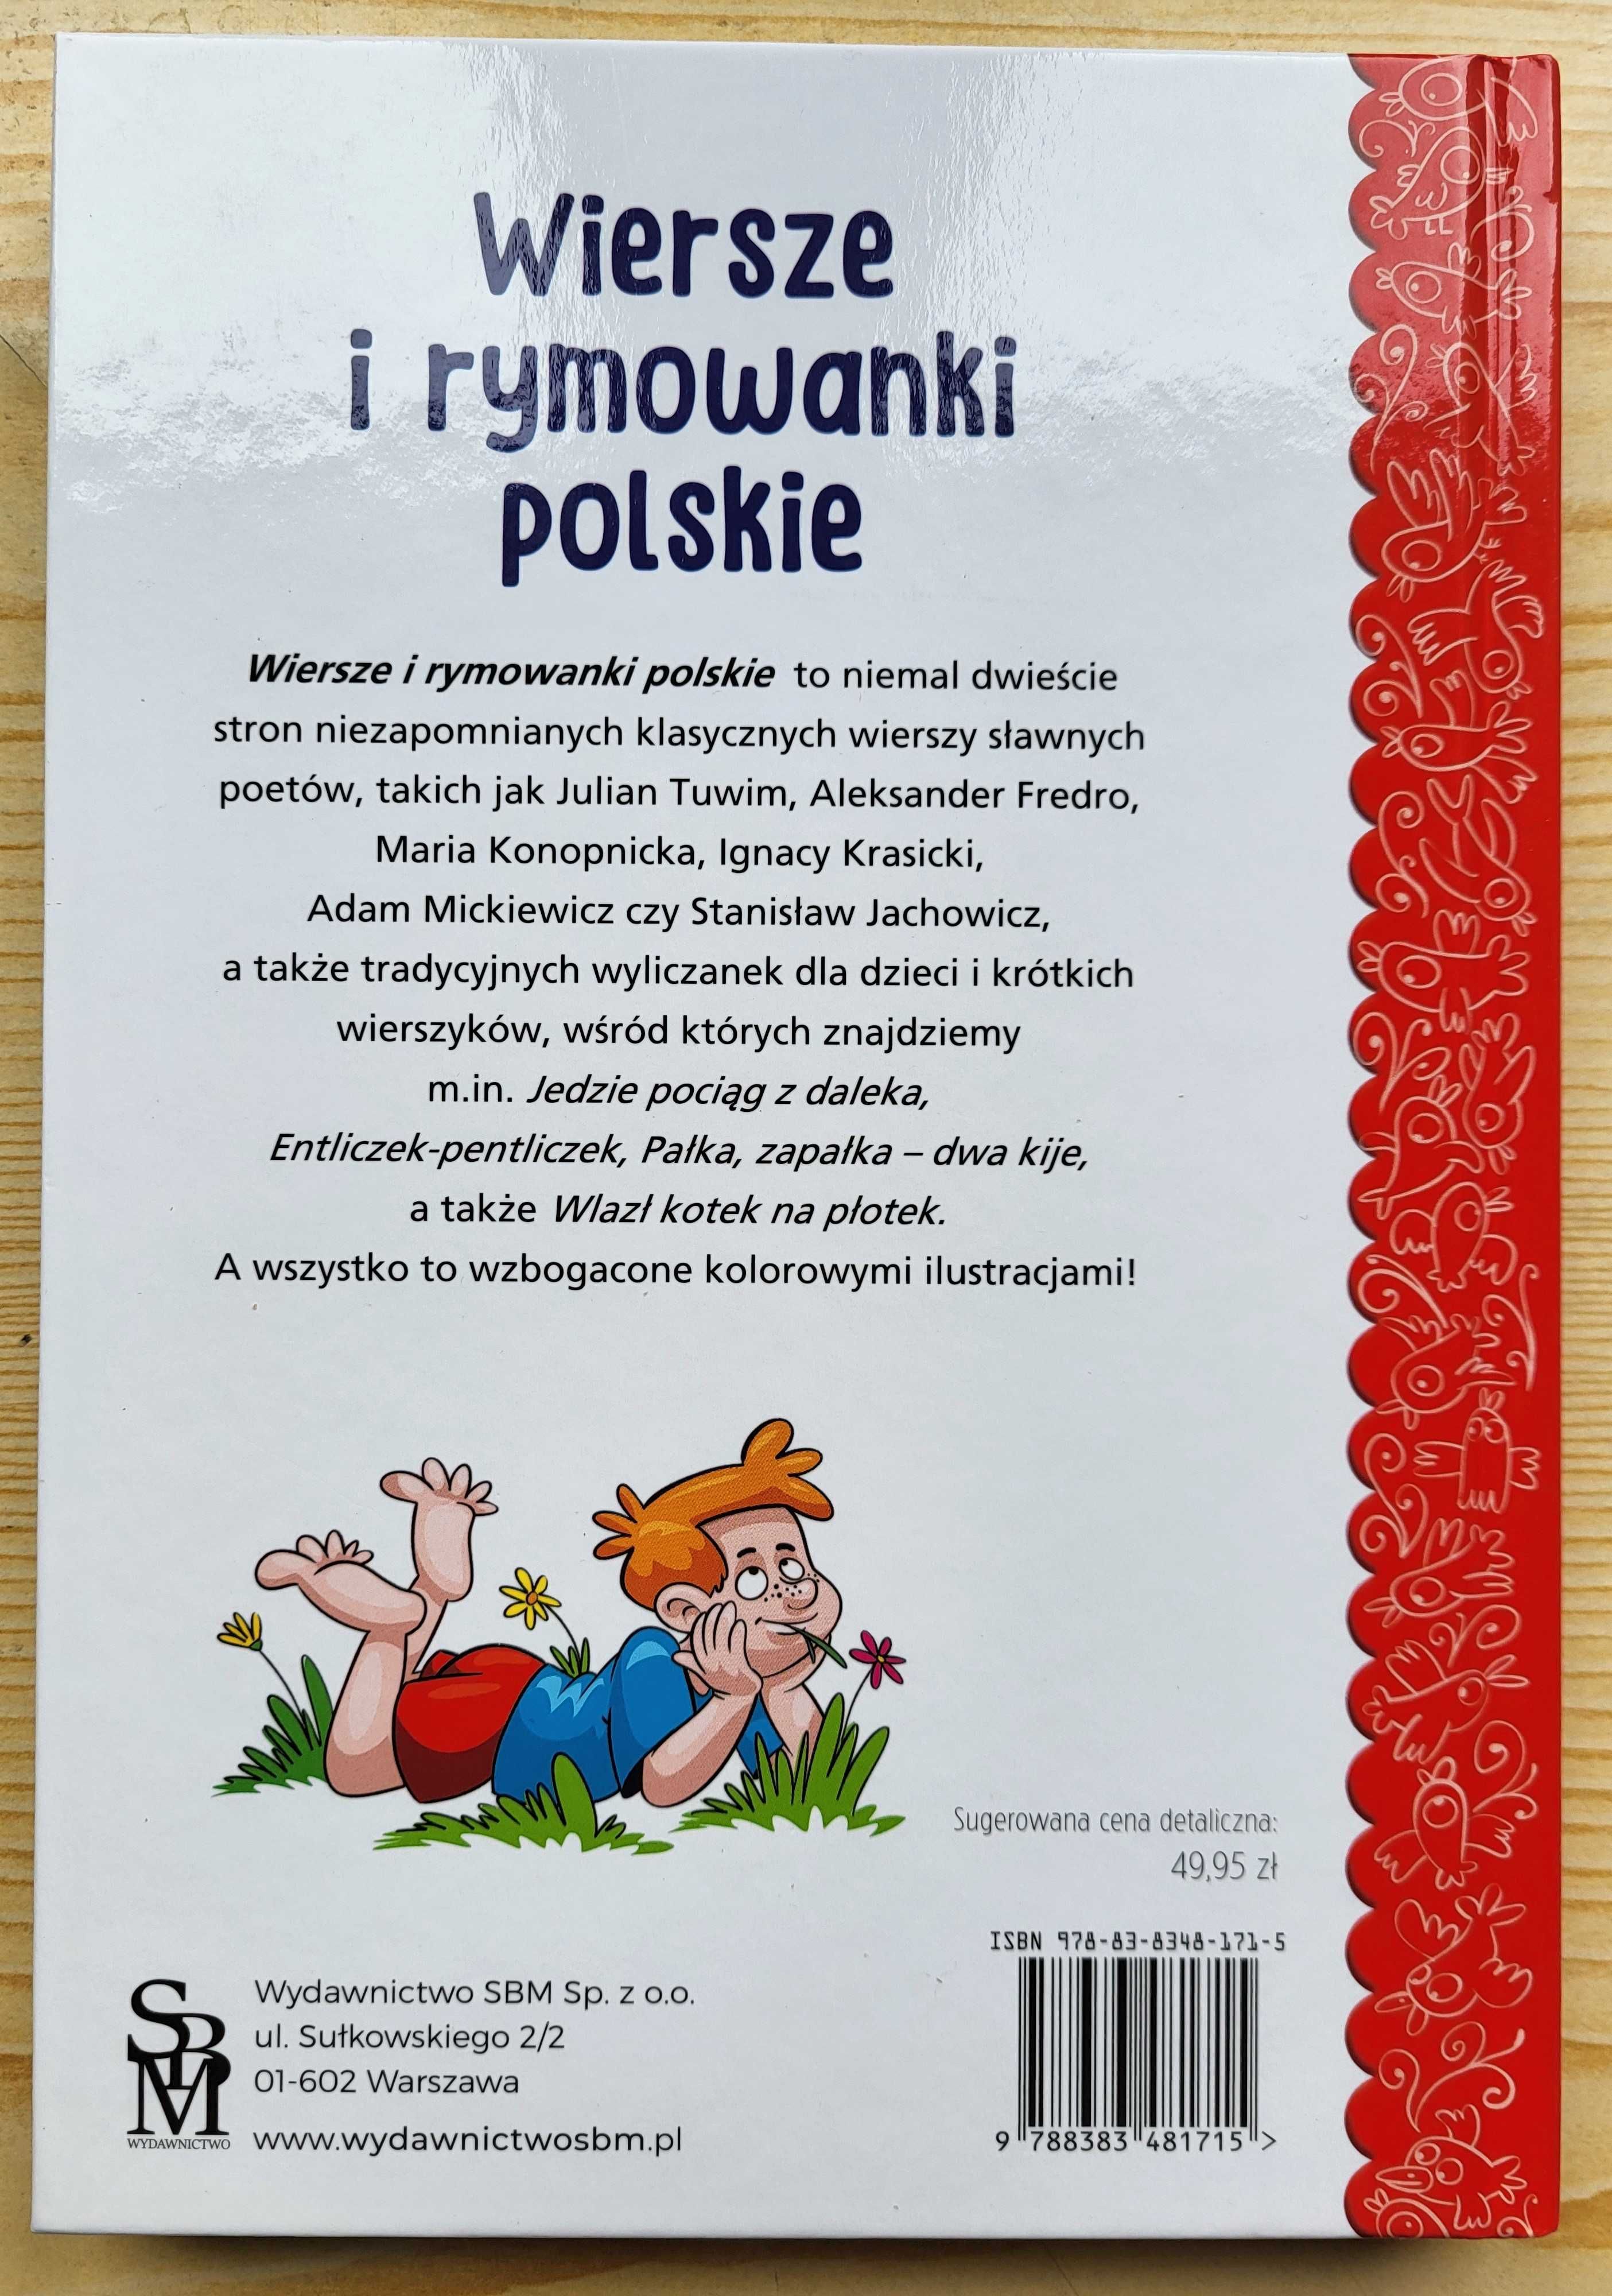 "Wiersze i rymowanki polskie" Tuwim, Fredro... NOWA NAJTANIEJ na RYNKU